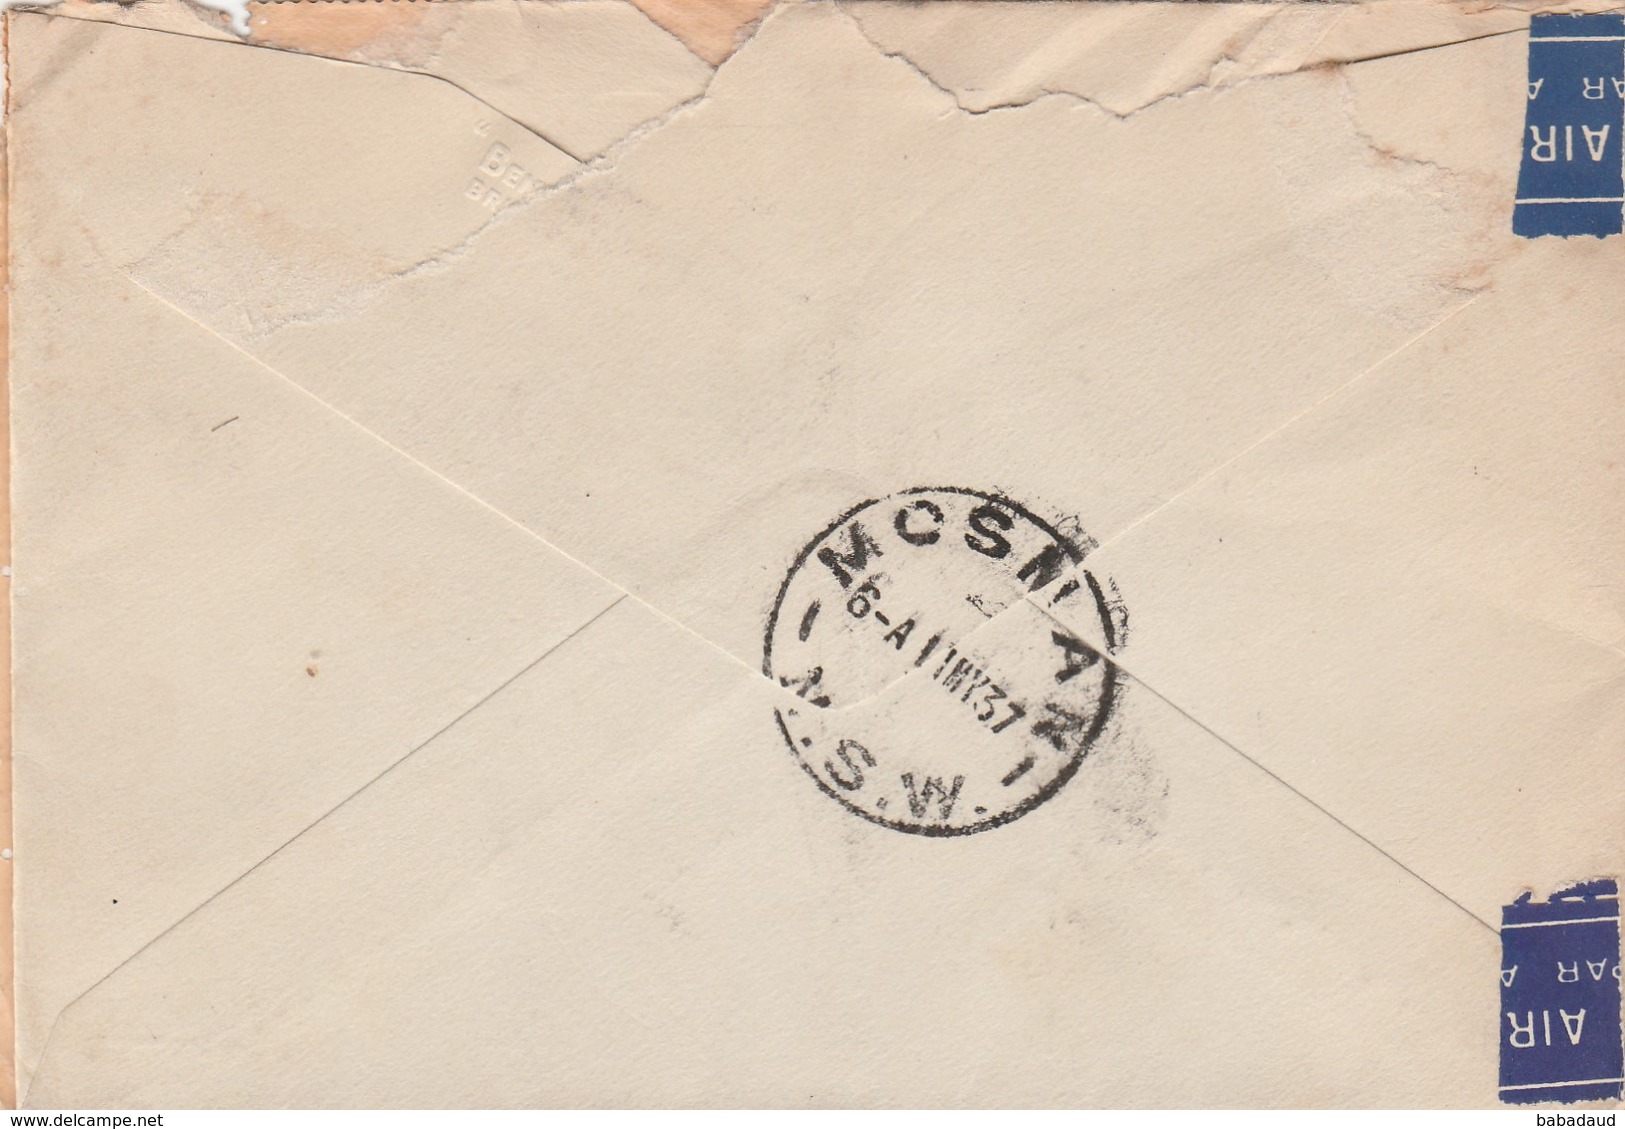 Great Britain, EVIIIR, 1'3 Air Mail LEEDS 28 AP 37 > Australai - MOSMAN N.S.W. 11 MY 37 - Lettres & Documents